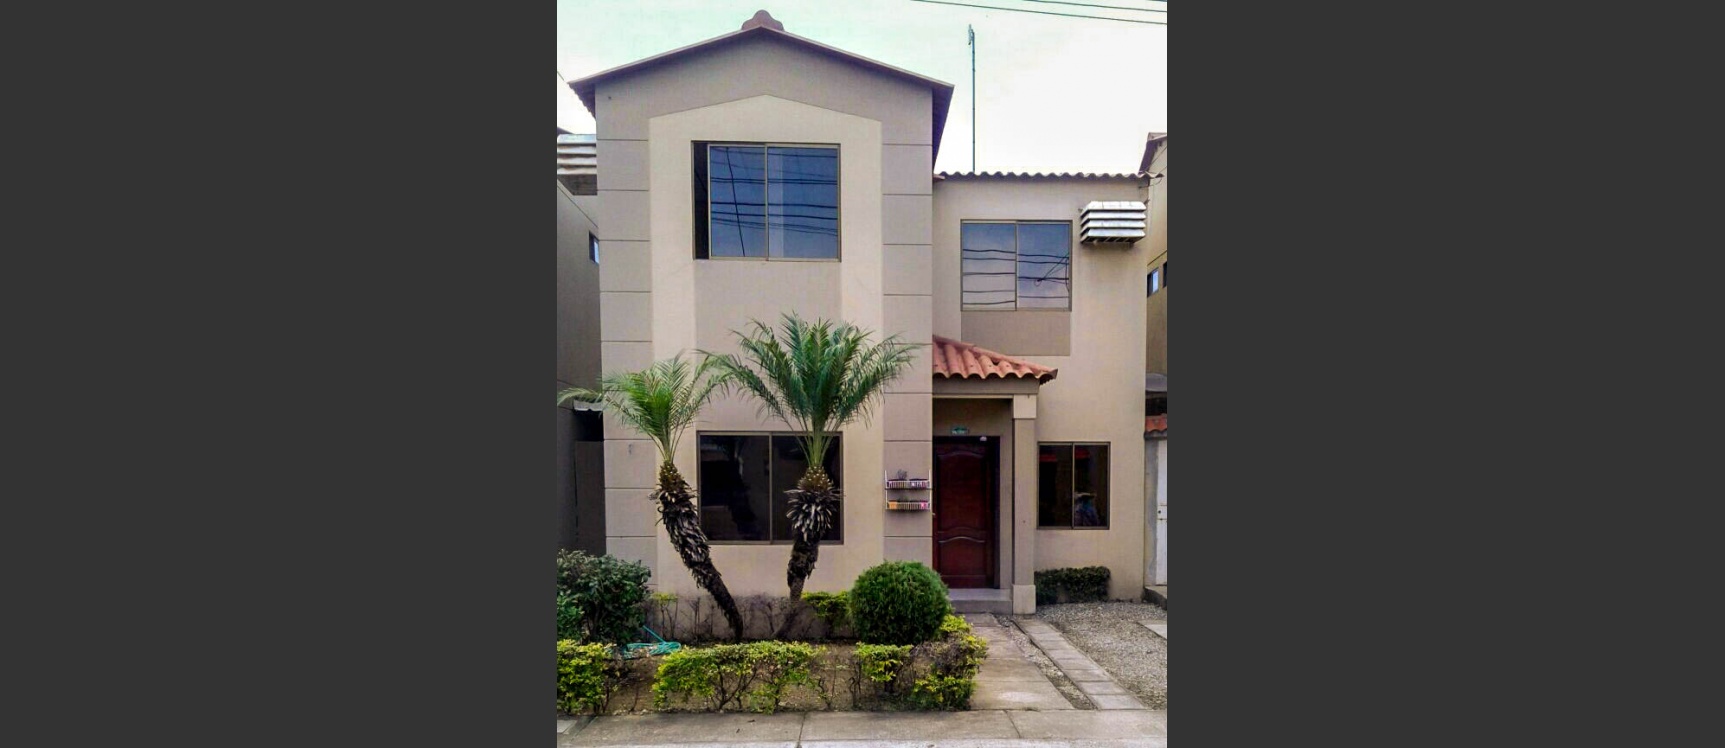 GeoBienes - Casa en venta en La Joya etapa Zafiro, Samborondón   - Plusvalia Guayaquil Casas de venta y alquiler Inmobiliaria Ecuador